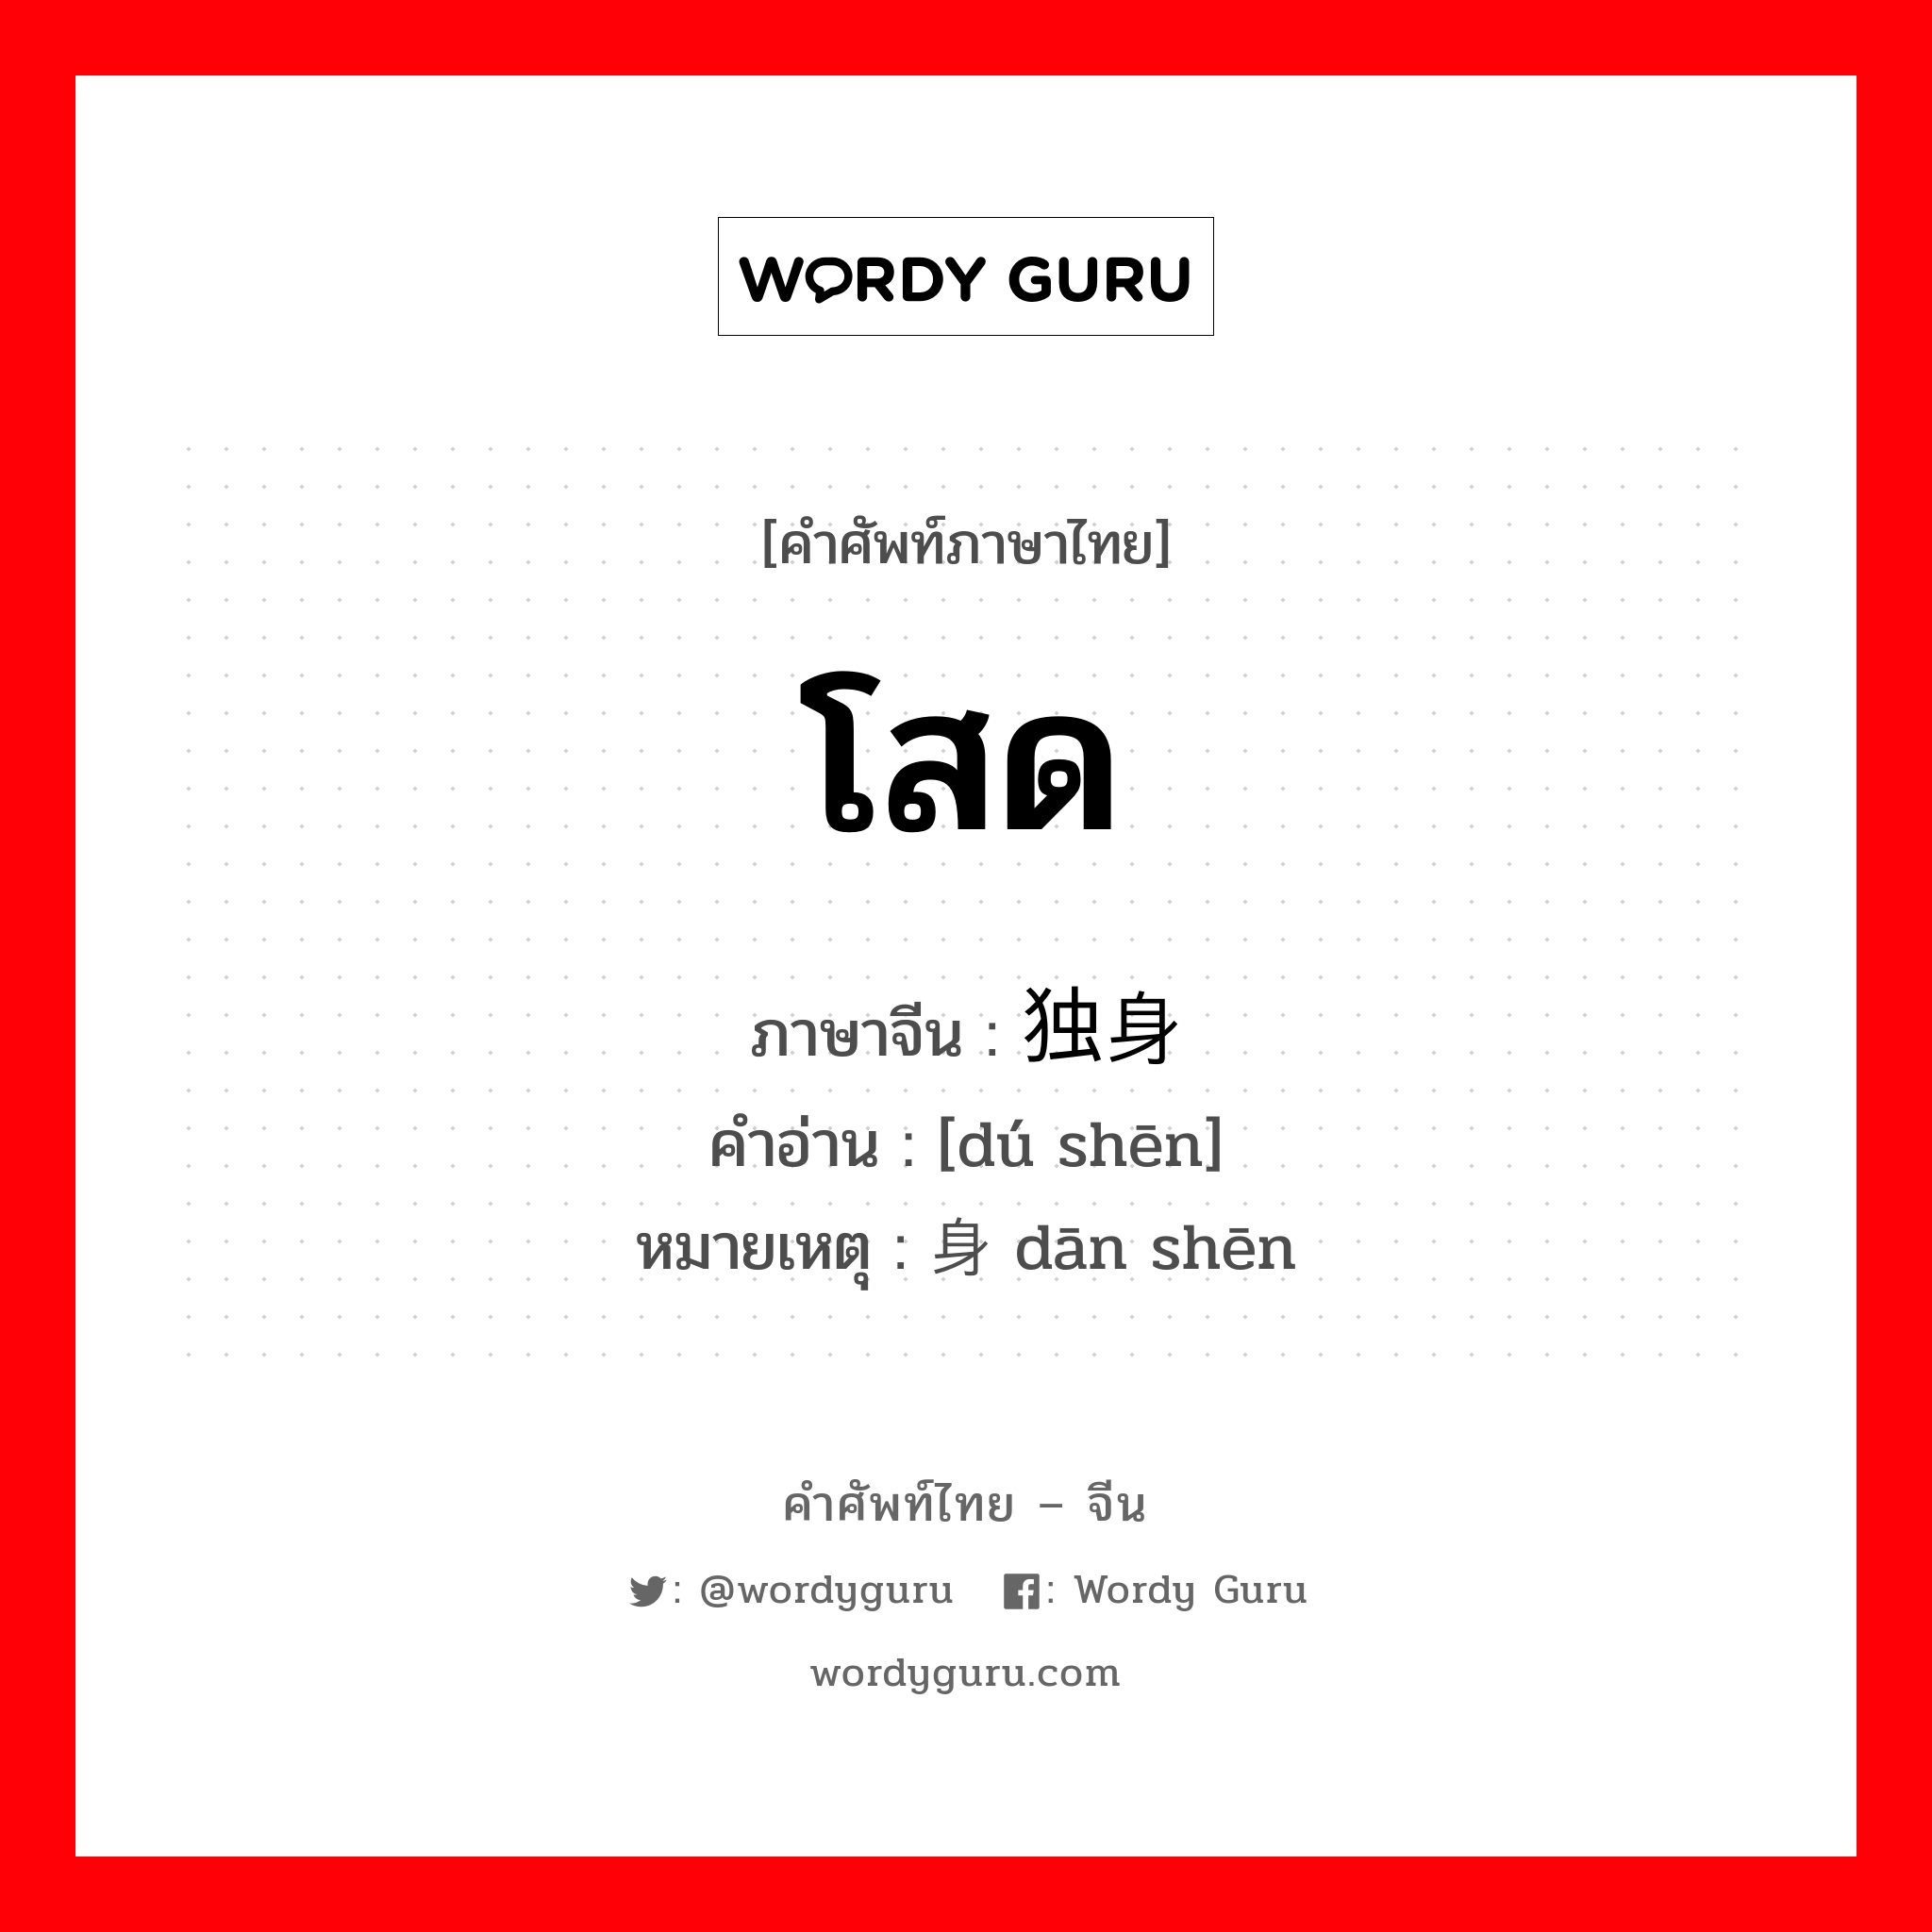 โสด ภาษาจีนคืออะไร, คำศัพท์ภาษาไทย - จีน โสด ภาษาจีน 独身 คำอ่าน [dú shēn] หมายเหตุ 单身 dān shēn